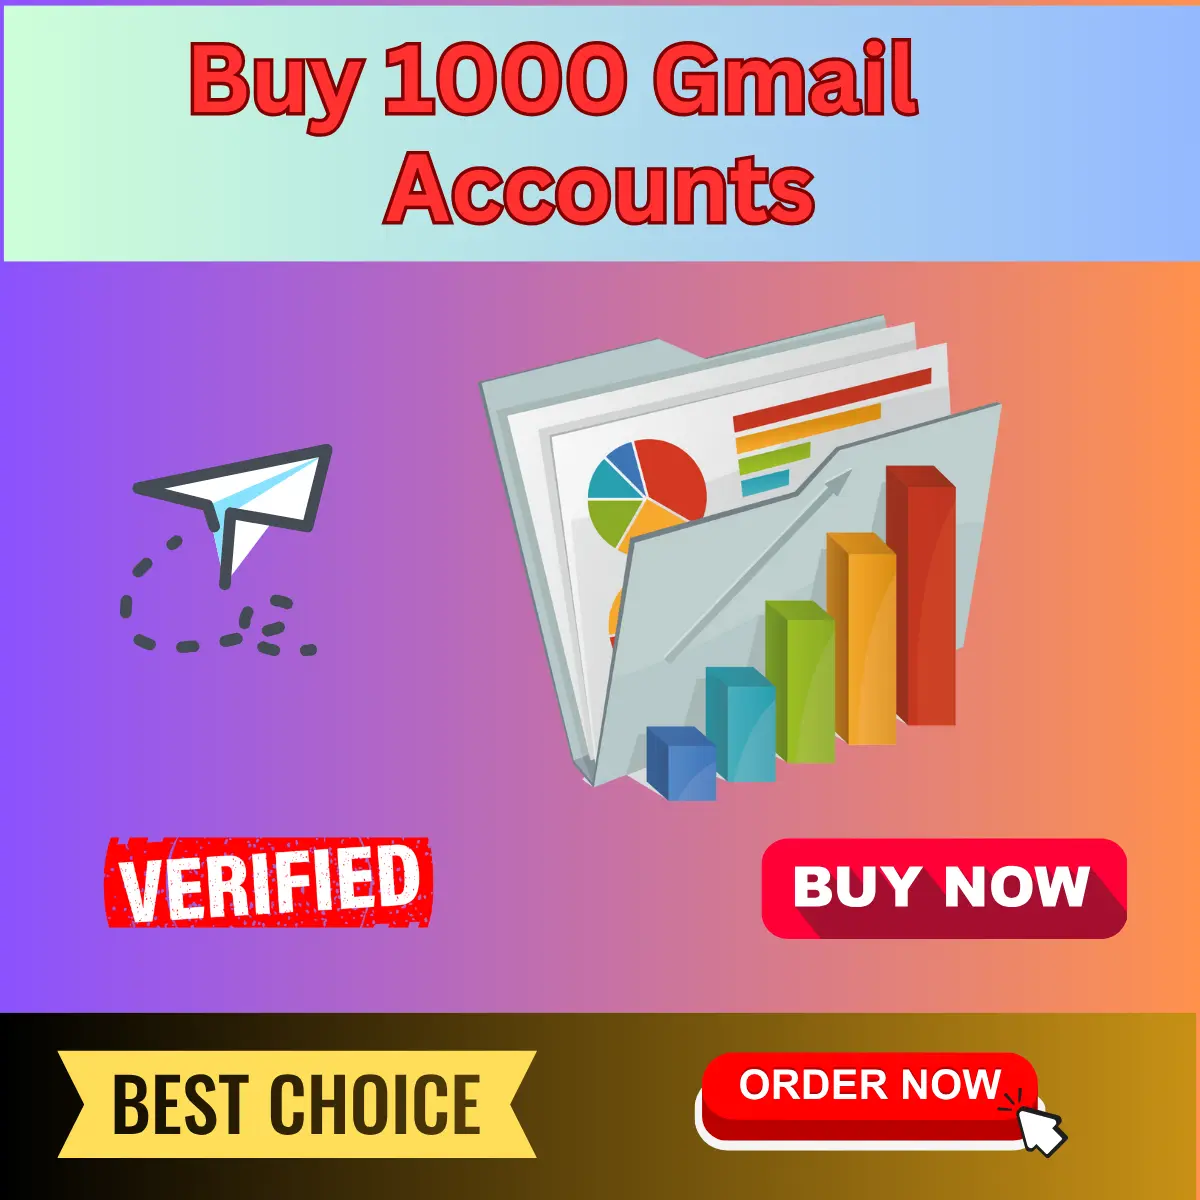 1000 GMAIL PVA Accounts